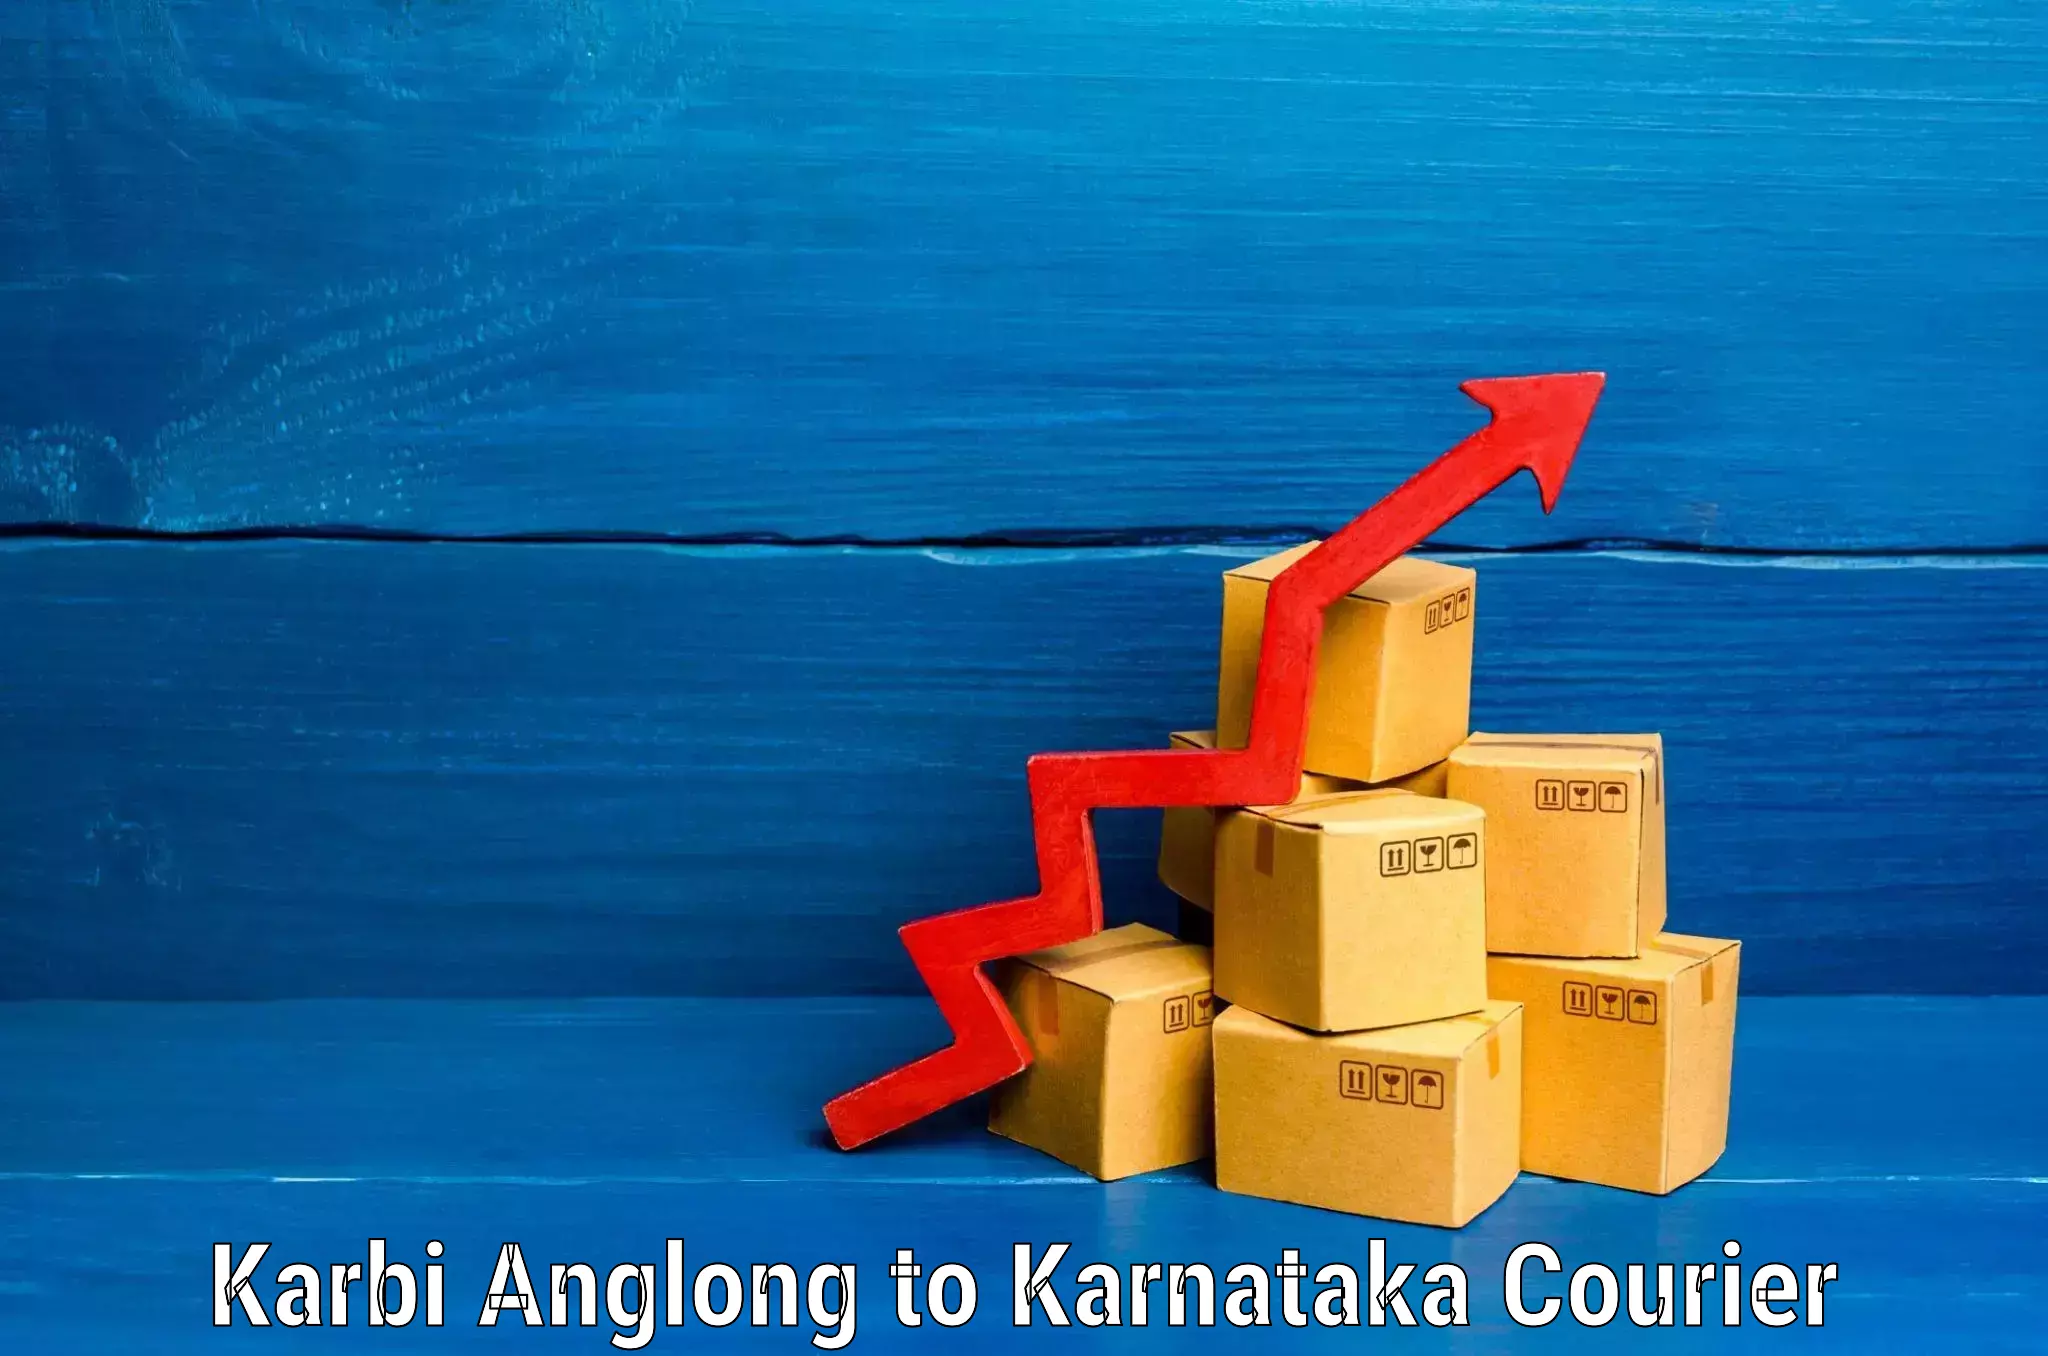 Baggage shipping service Karbi Anglong to Jalahalli